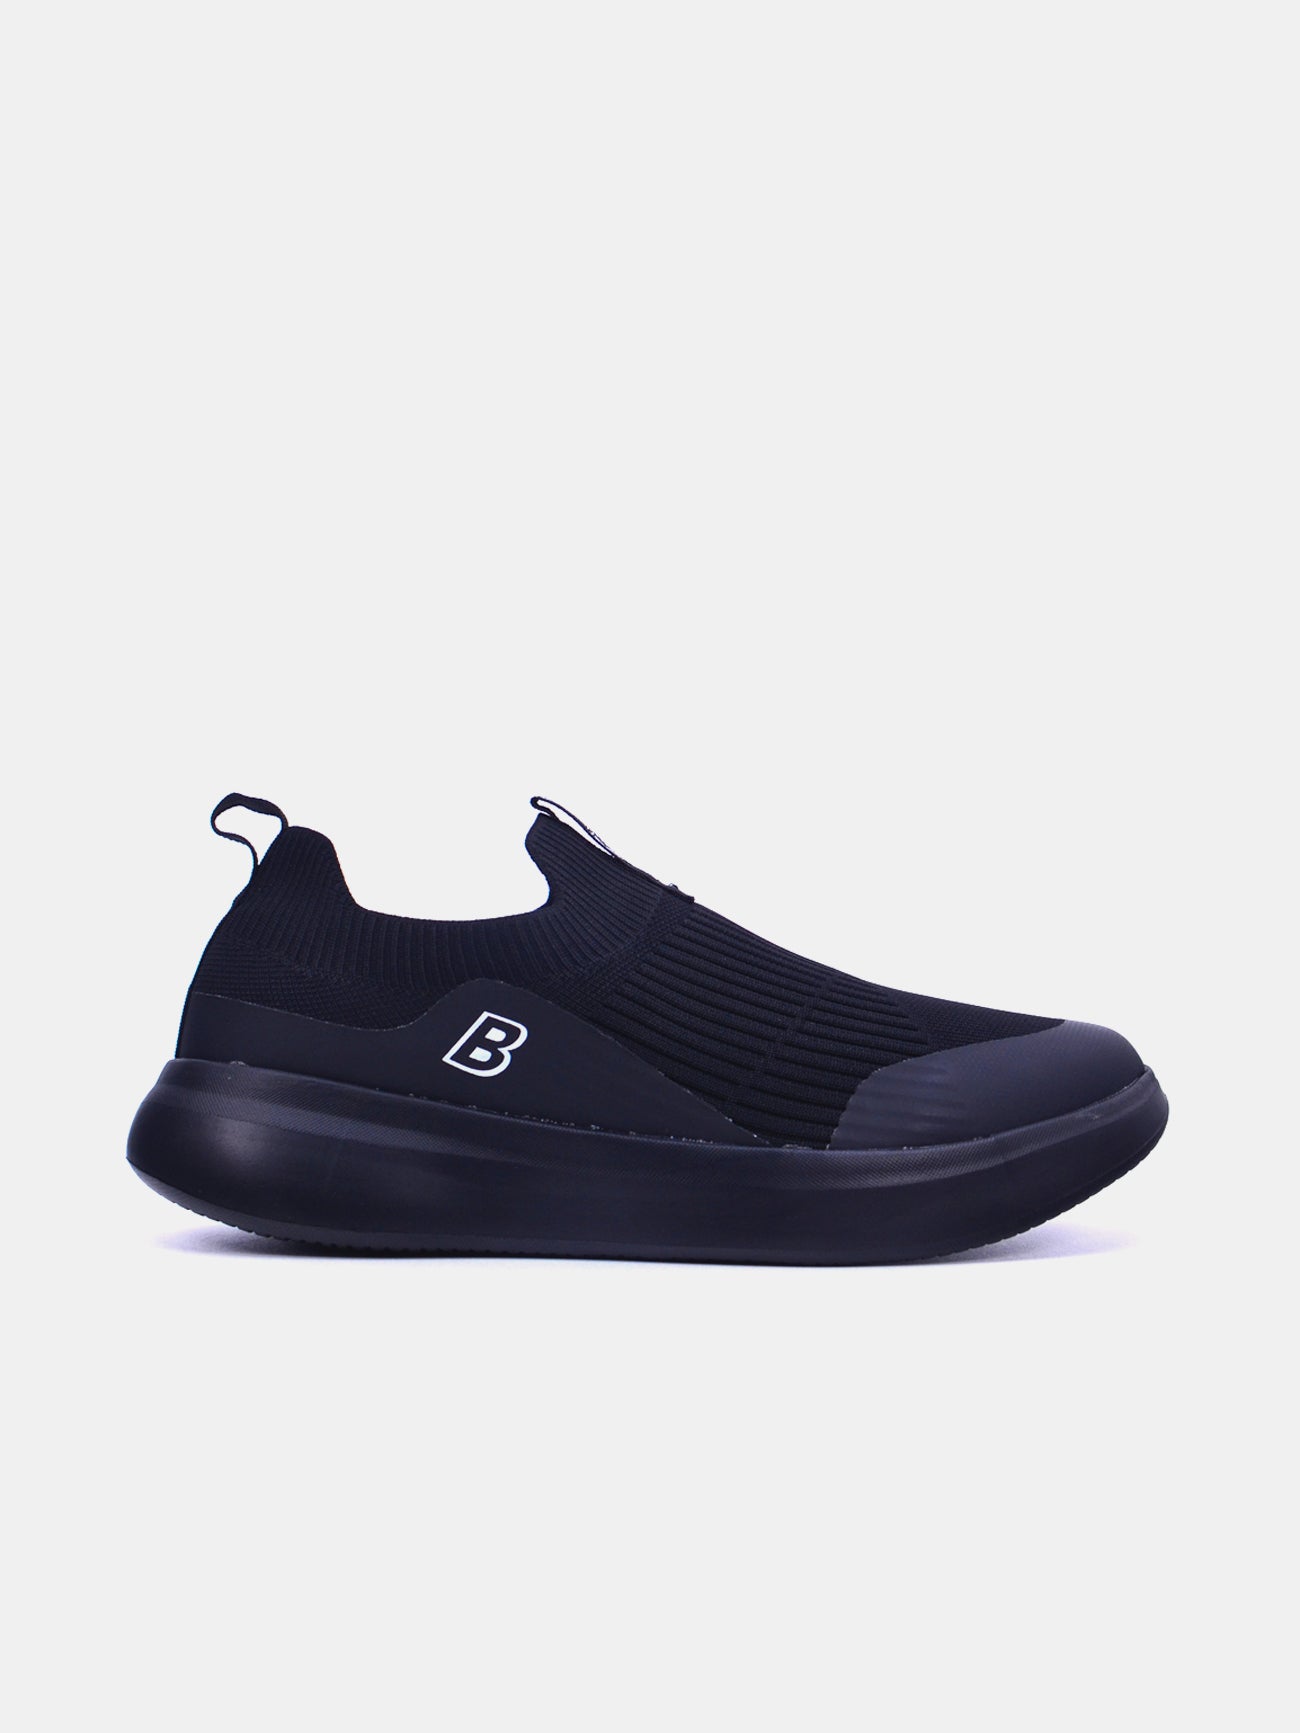 Barjeel Uno F35-W005 Men's Casual Shoes